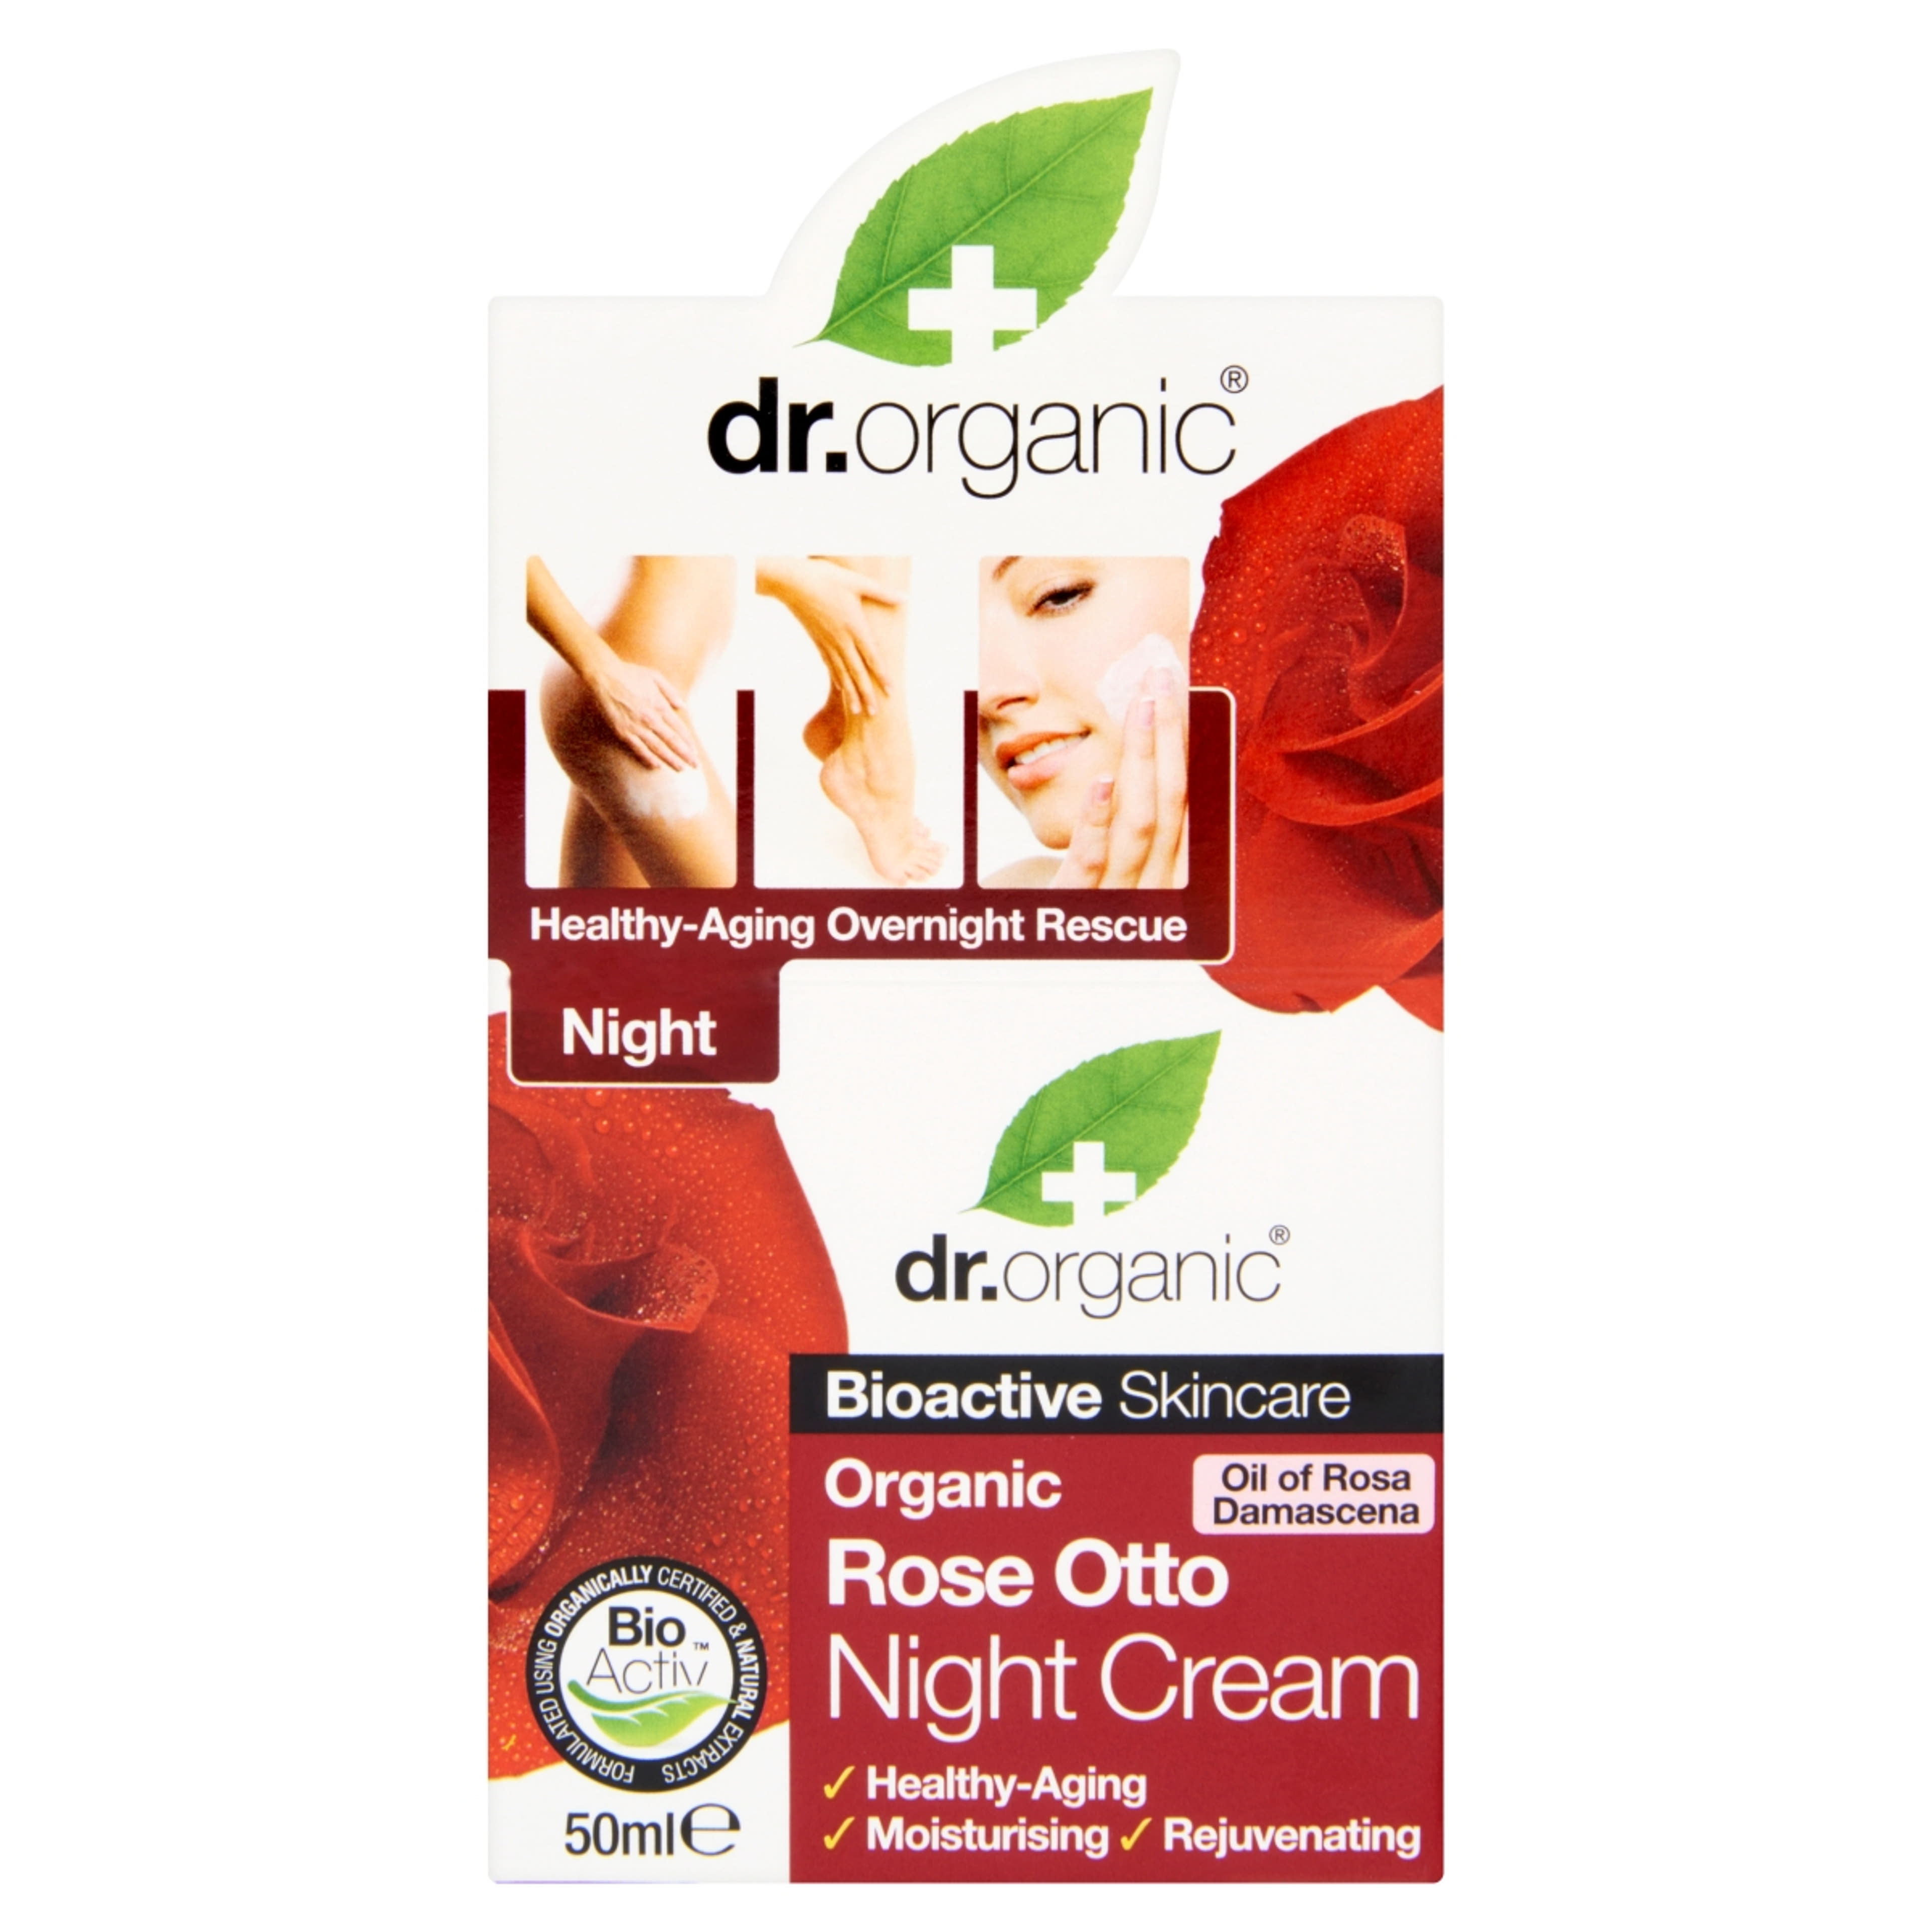 Dr. Organic damaszkuszi rózsolajos éjszakai krém - 50 ml-1